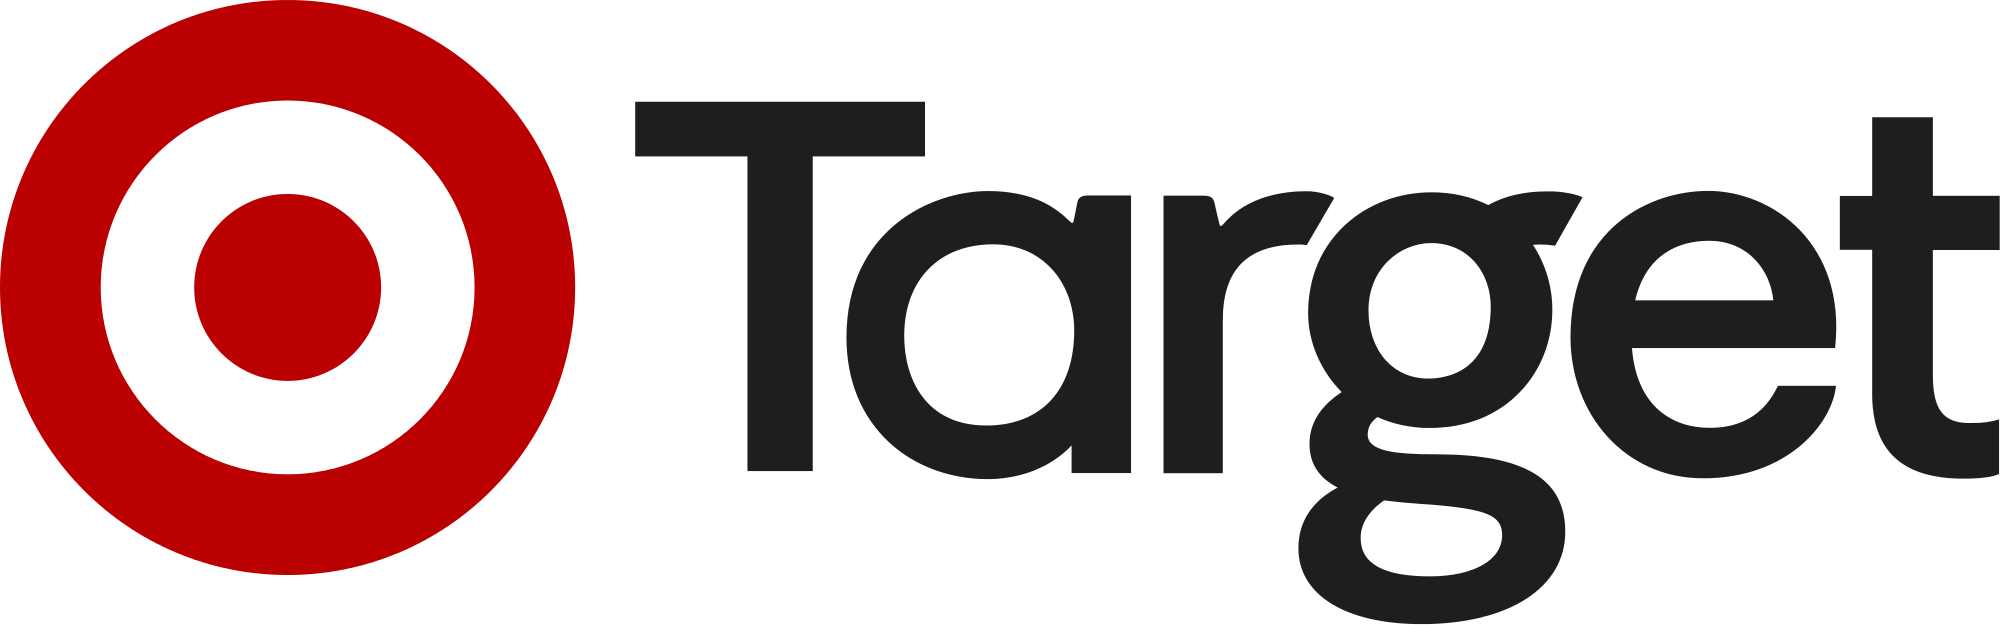 Target_Logo.svg.png